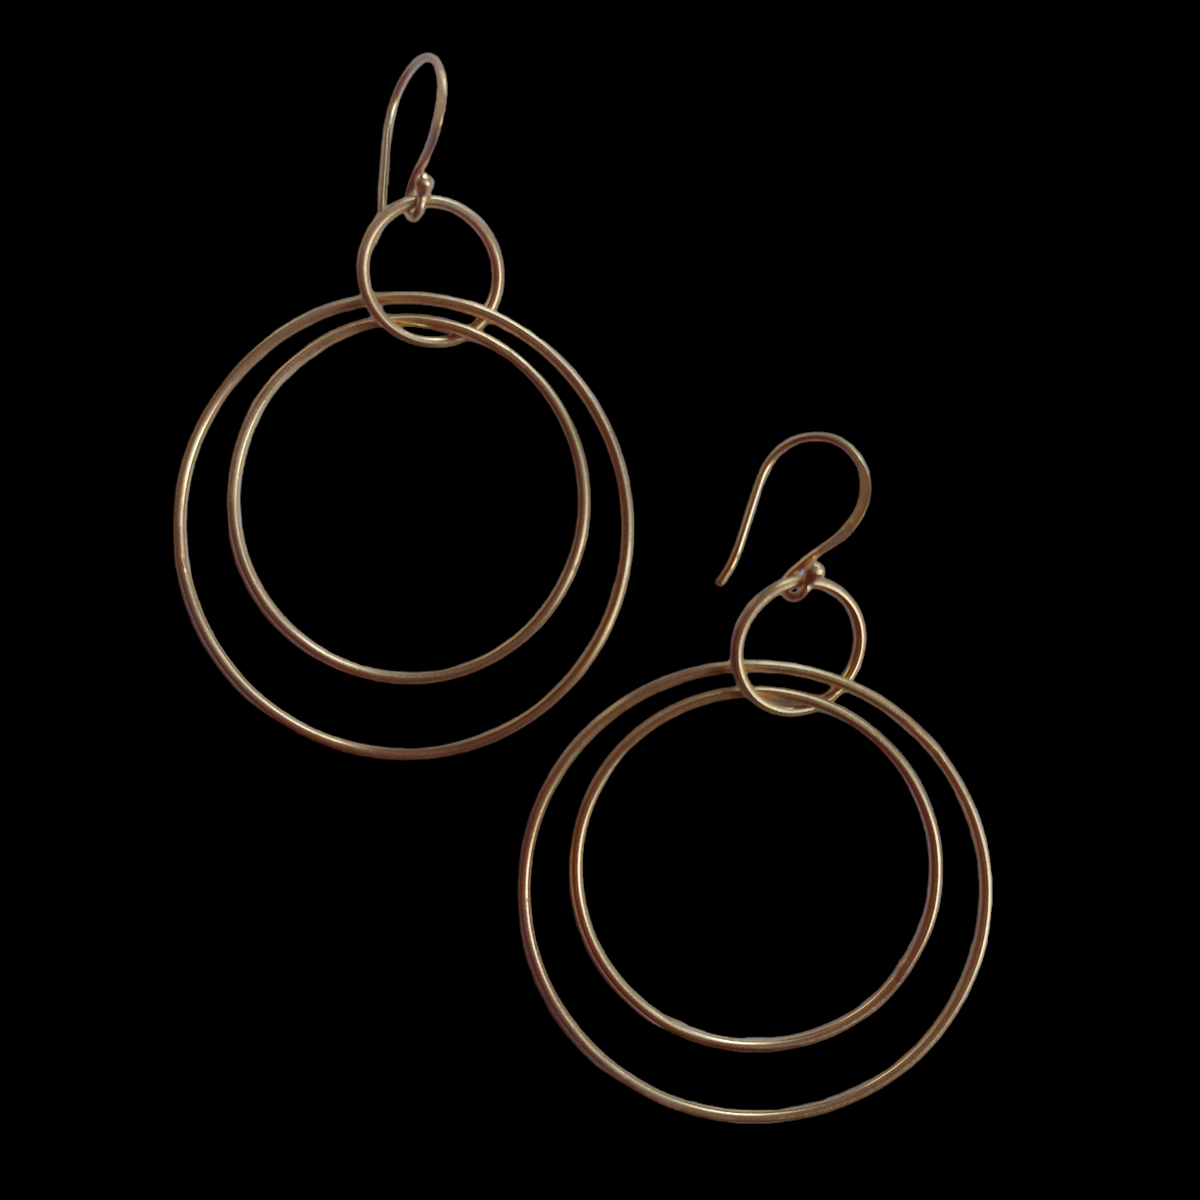 Handmade earrings with hoops